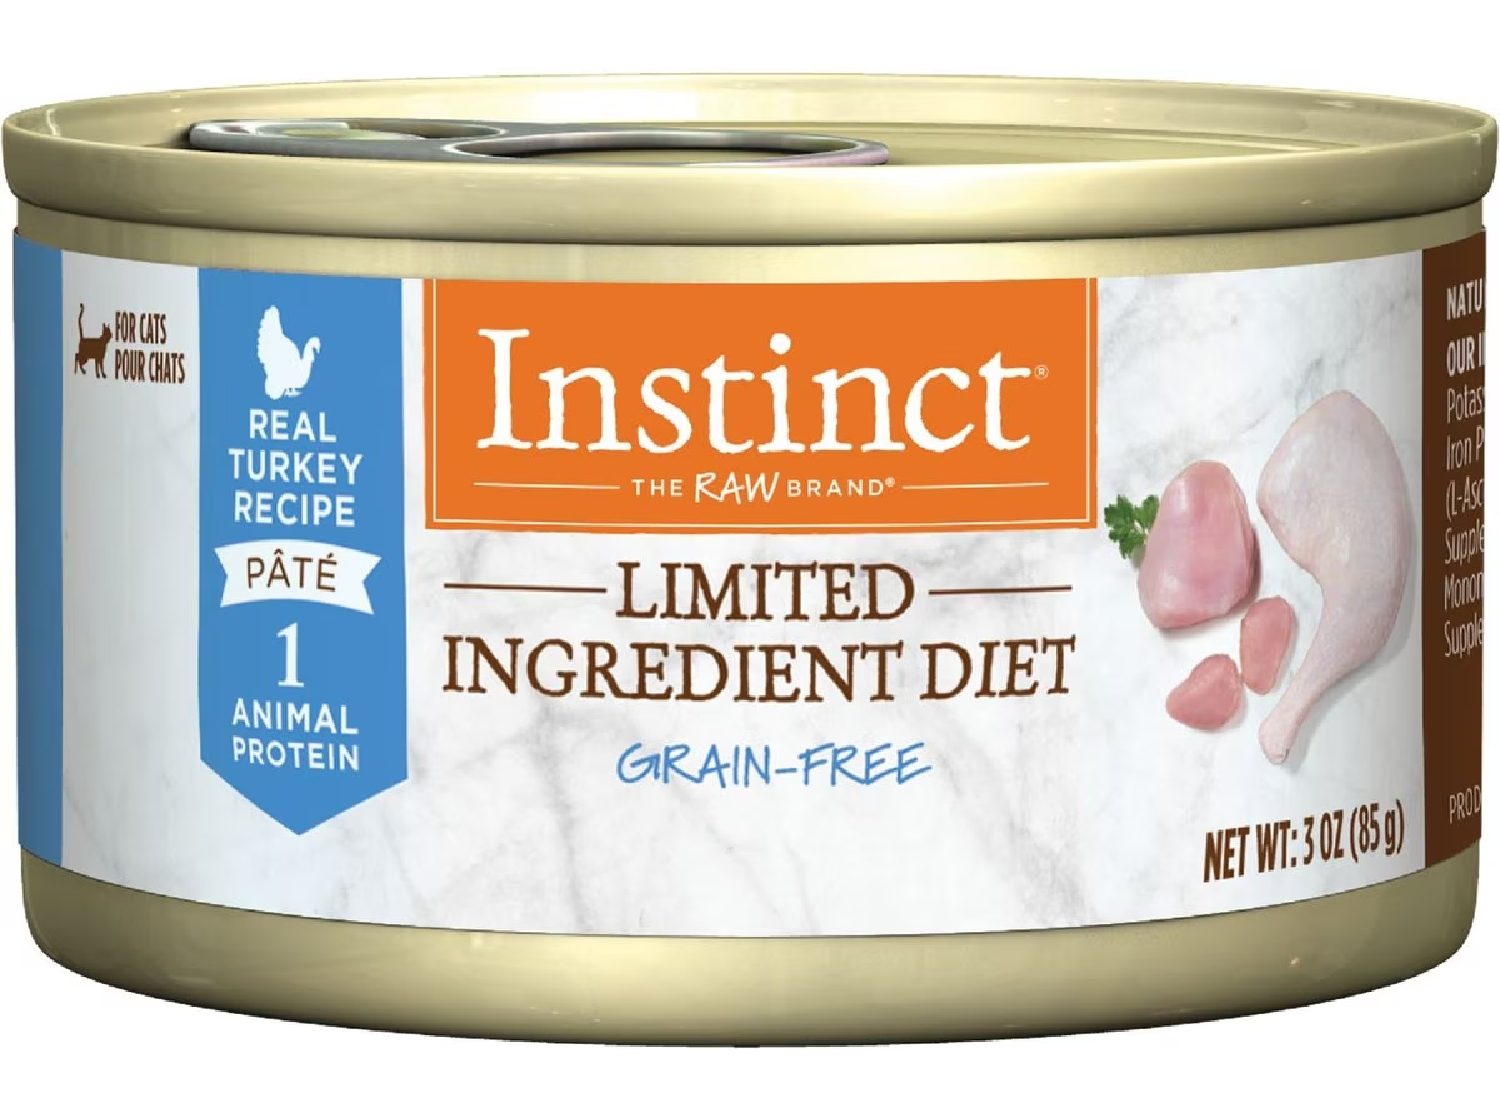 Instinct Limited Ingredient Diet Real Turkey Wet Cat Food